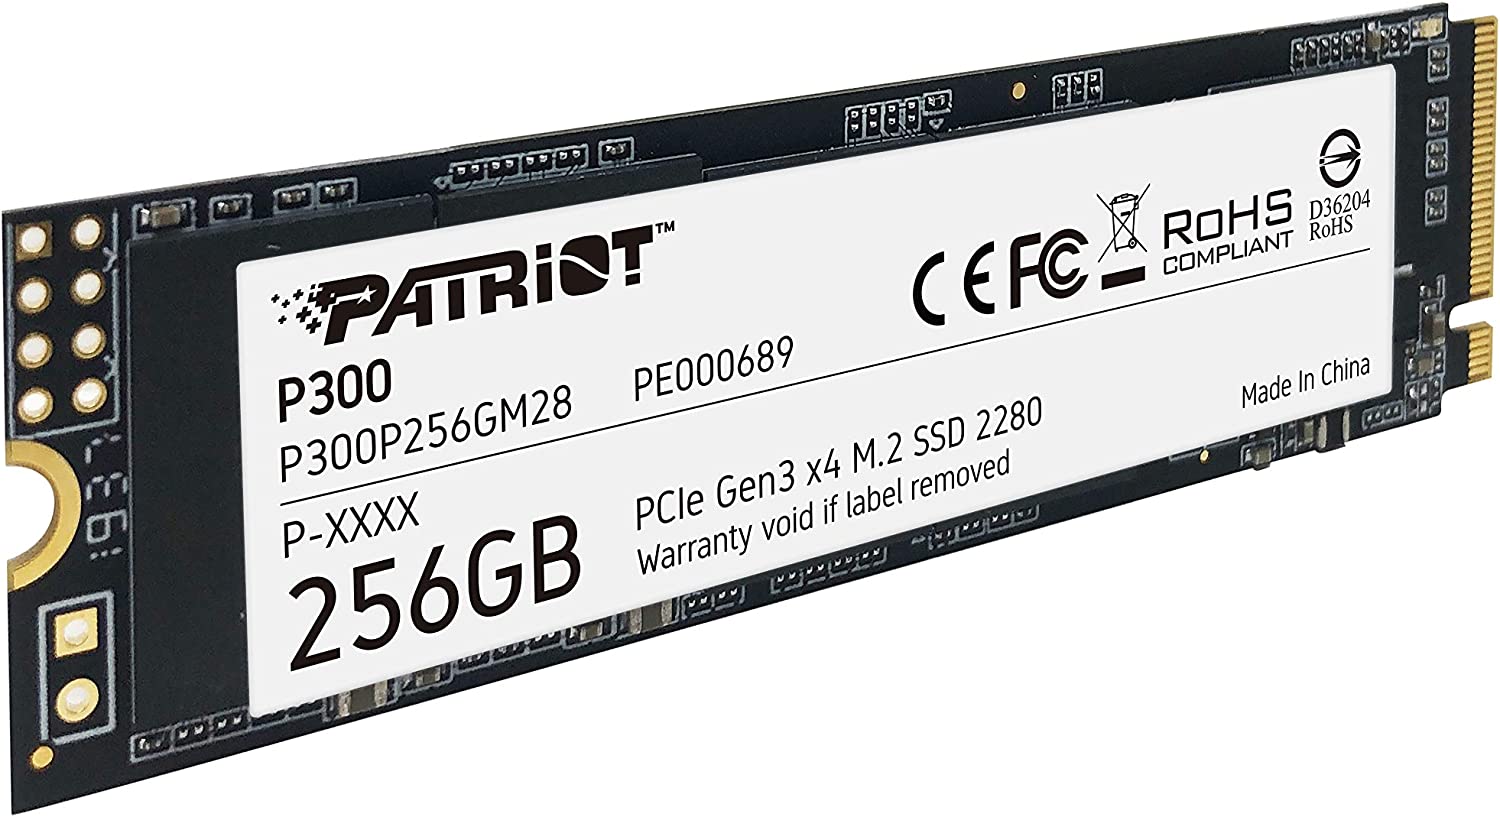 Patriot P300 M.2 PCIe Gen 3 x4 256GB Low-Power Consumption SSD